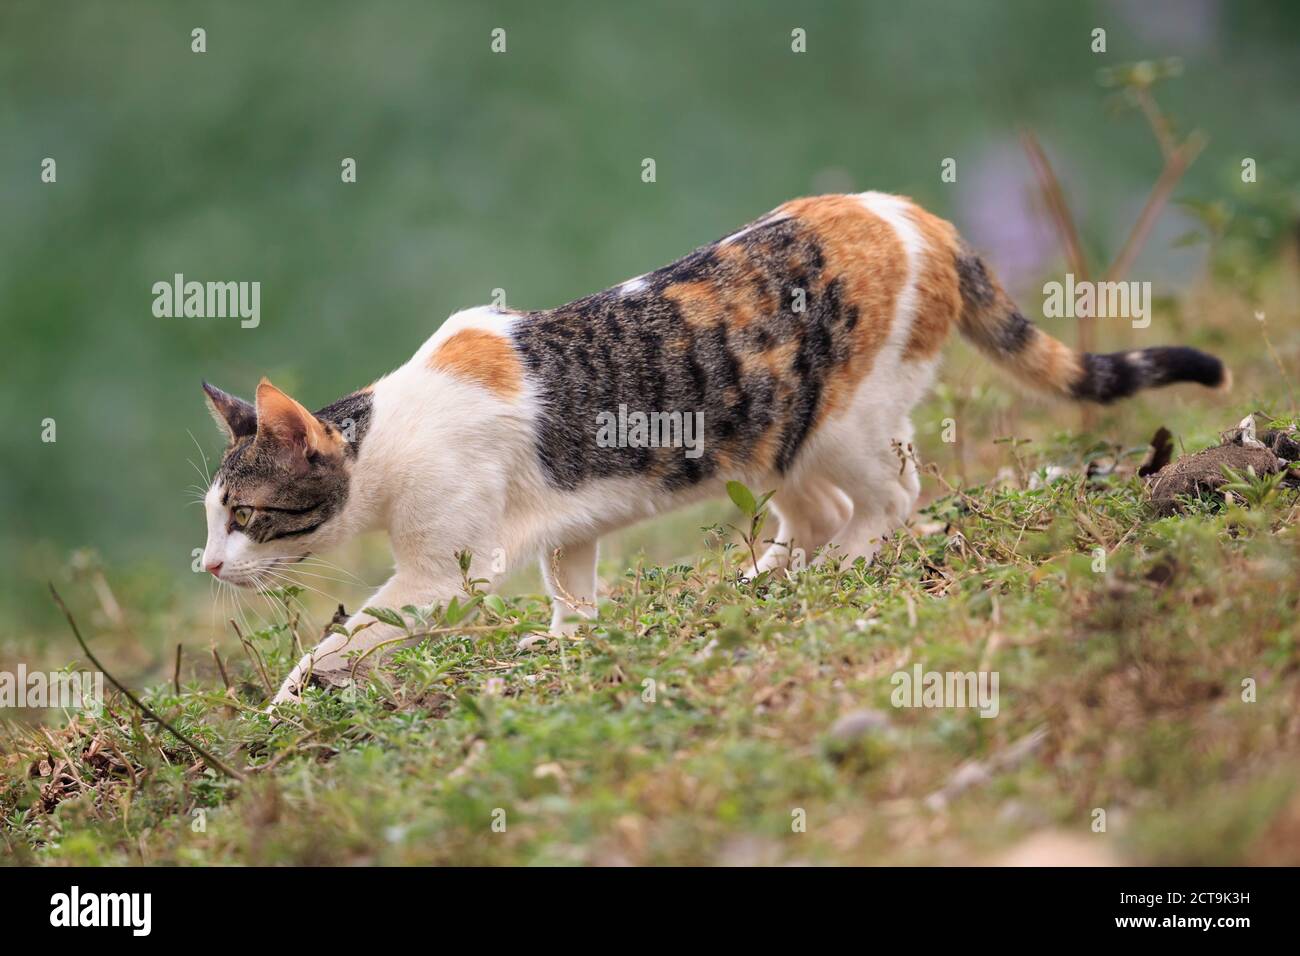 Brazil, Mato Grosso do Sul, Pantanal, Domestic cat Stock Photo